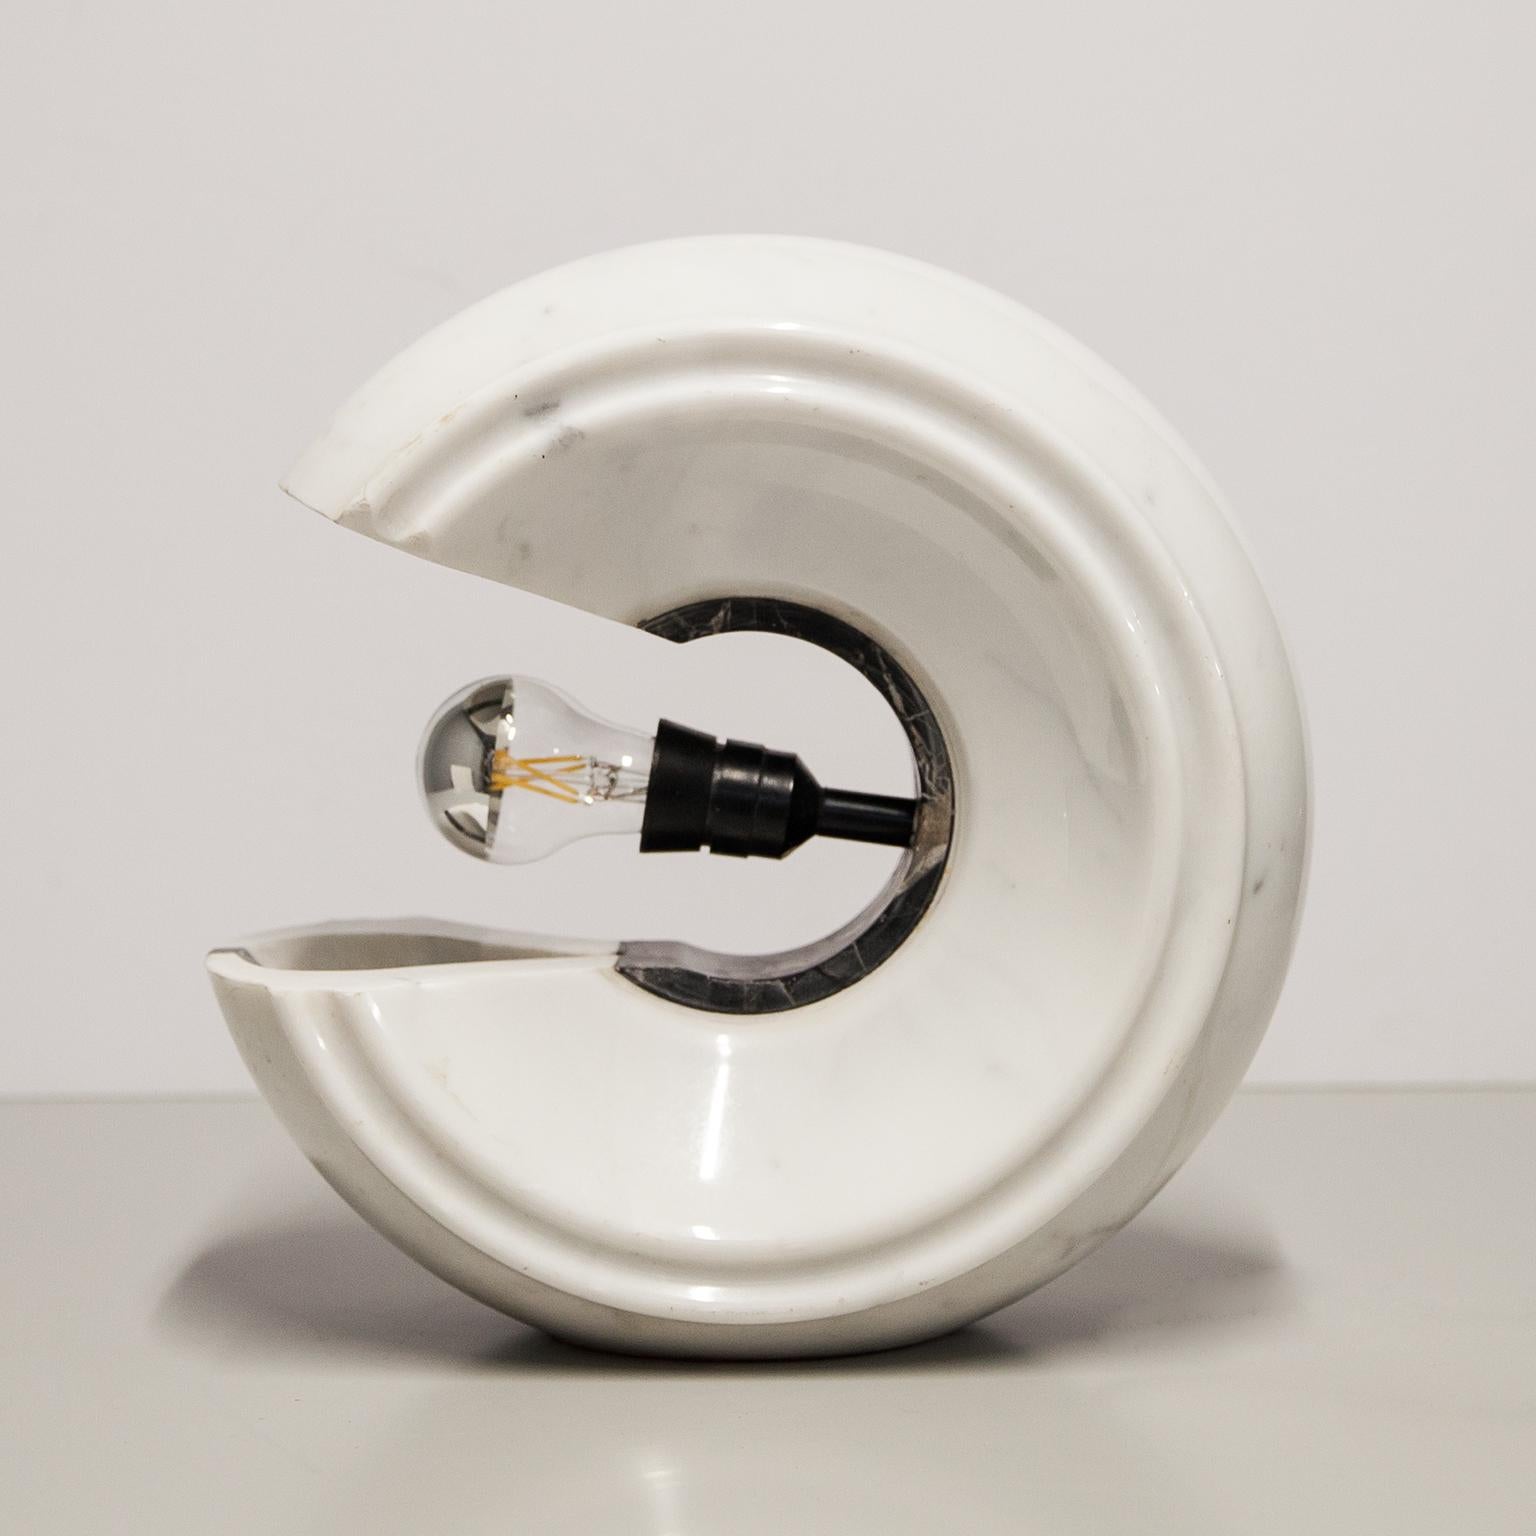 Très lourde lampe de table attribuée à Claudio Salocchi en marbre blanc et noir et fabriquée avec une prise E27, Italie années 1970.La prise du câble peut être changée pour une version UE ou USA.